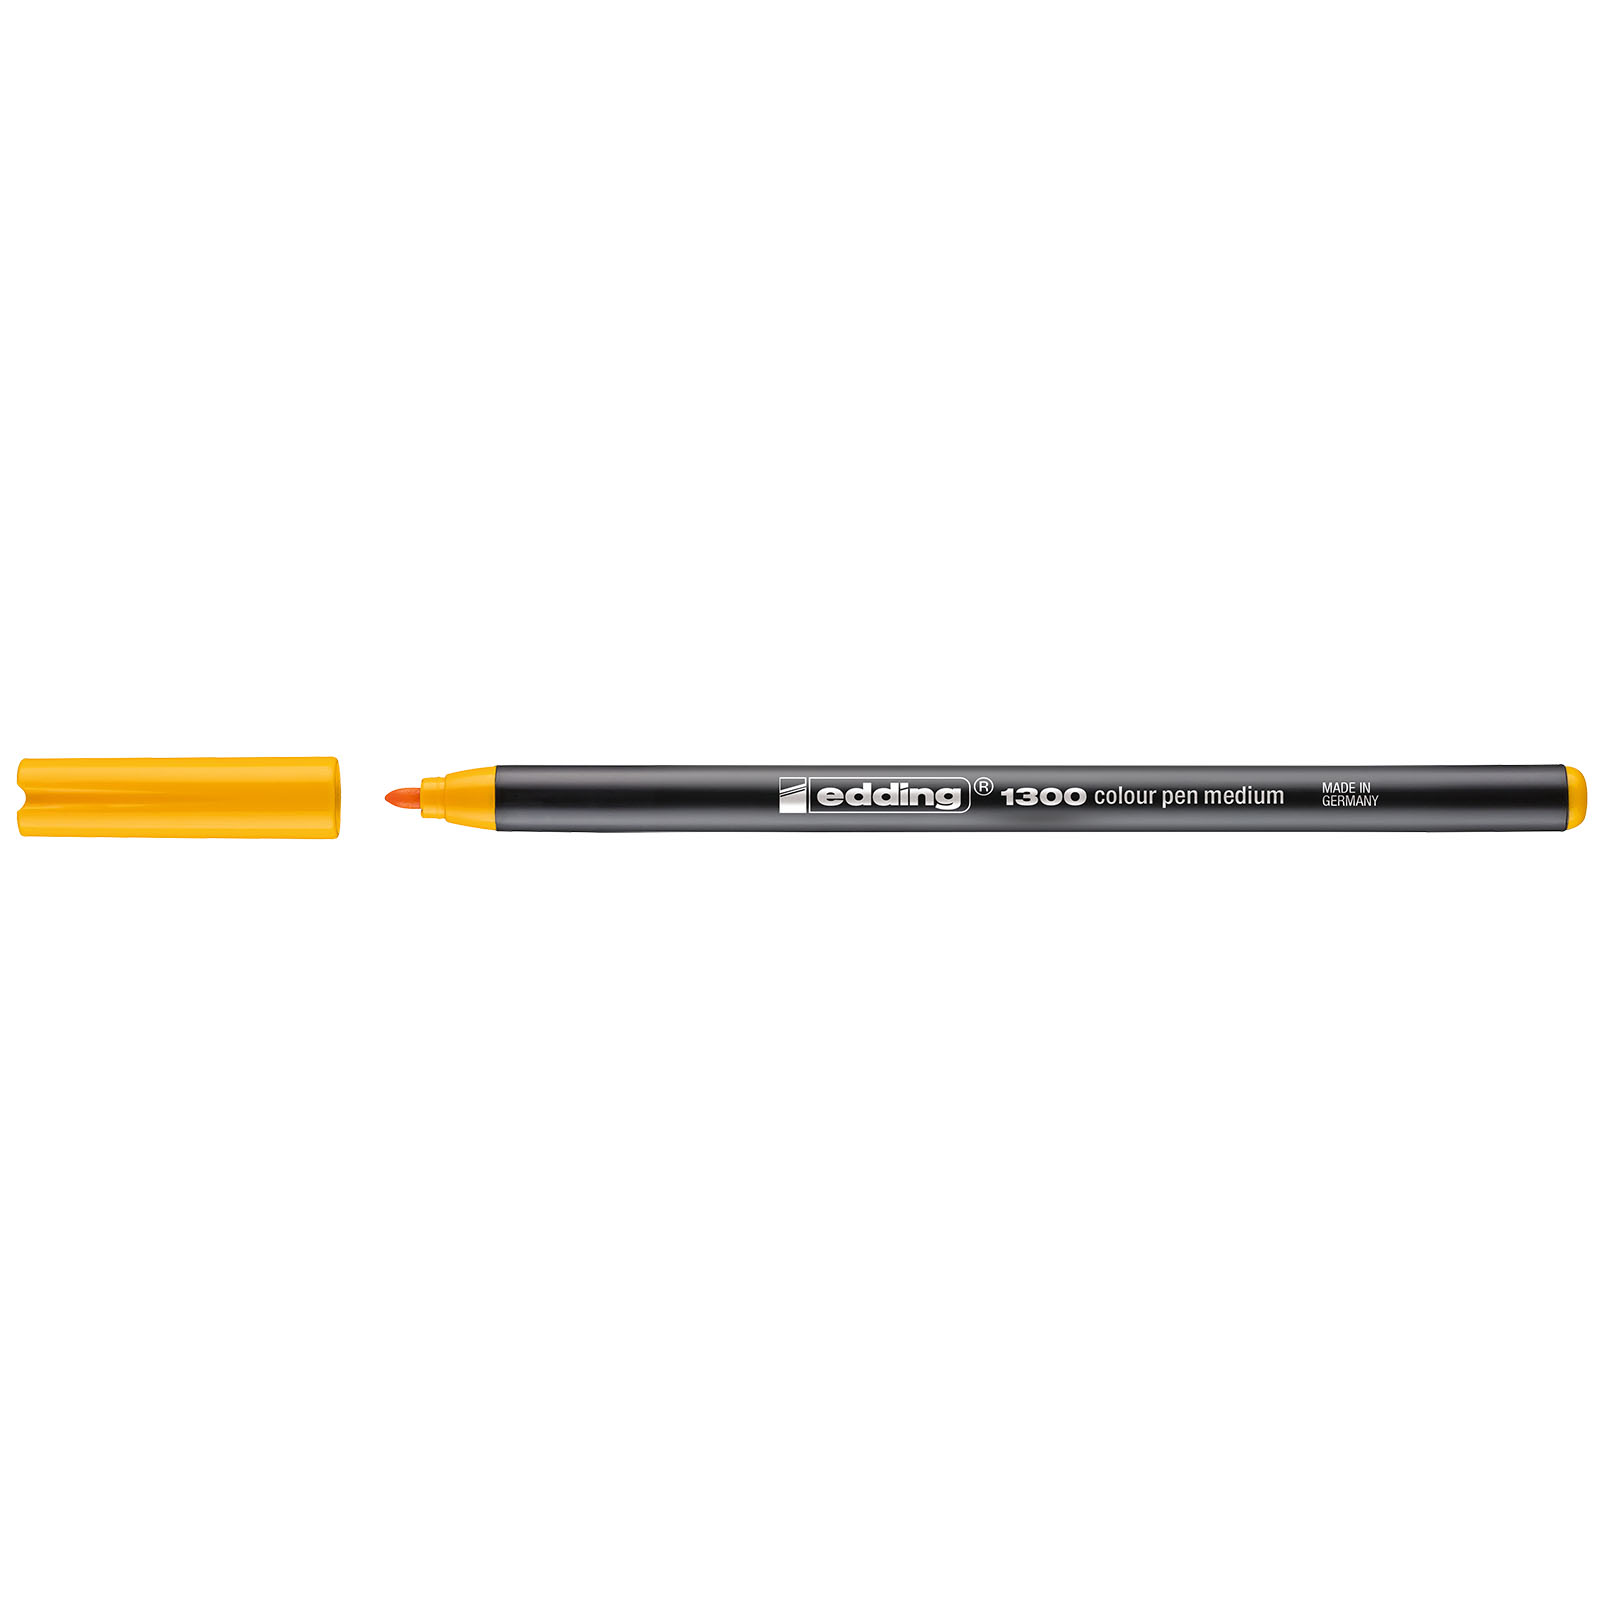 Edding 1300 • Rotulador de color de trazo medio Amarillo brillante